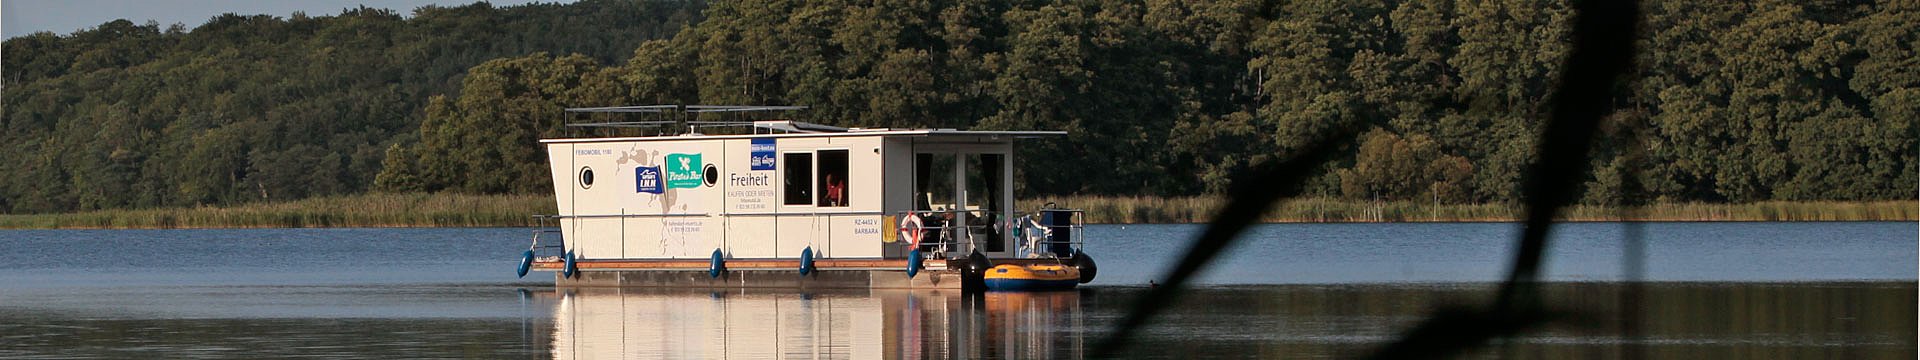 Schwimmendes Ferienhaus Febomobil mitten in der Natur - Mecklenburgische Seenplatte